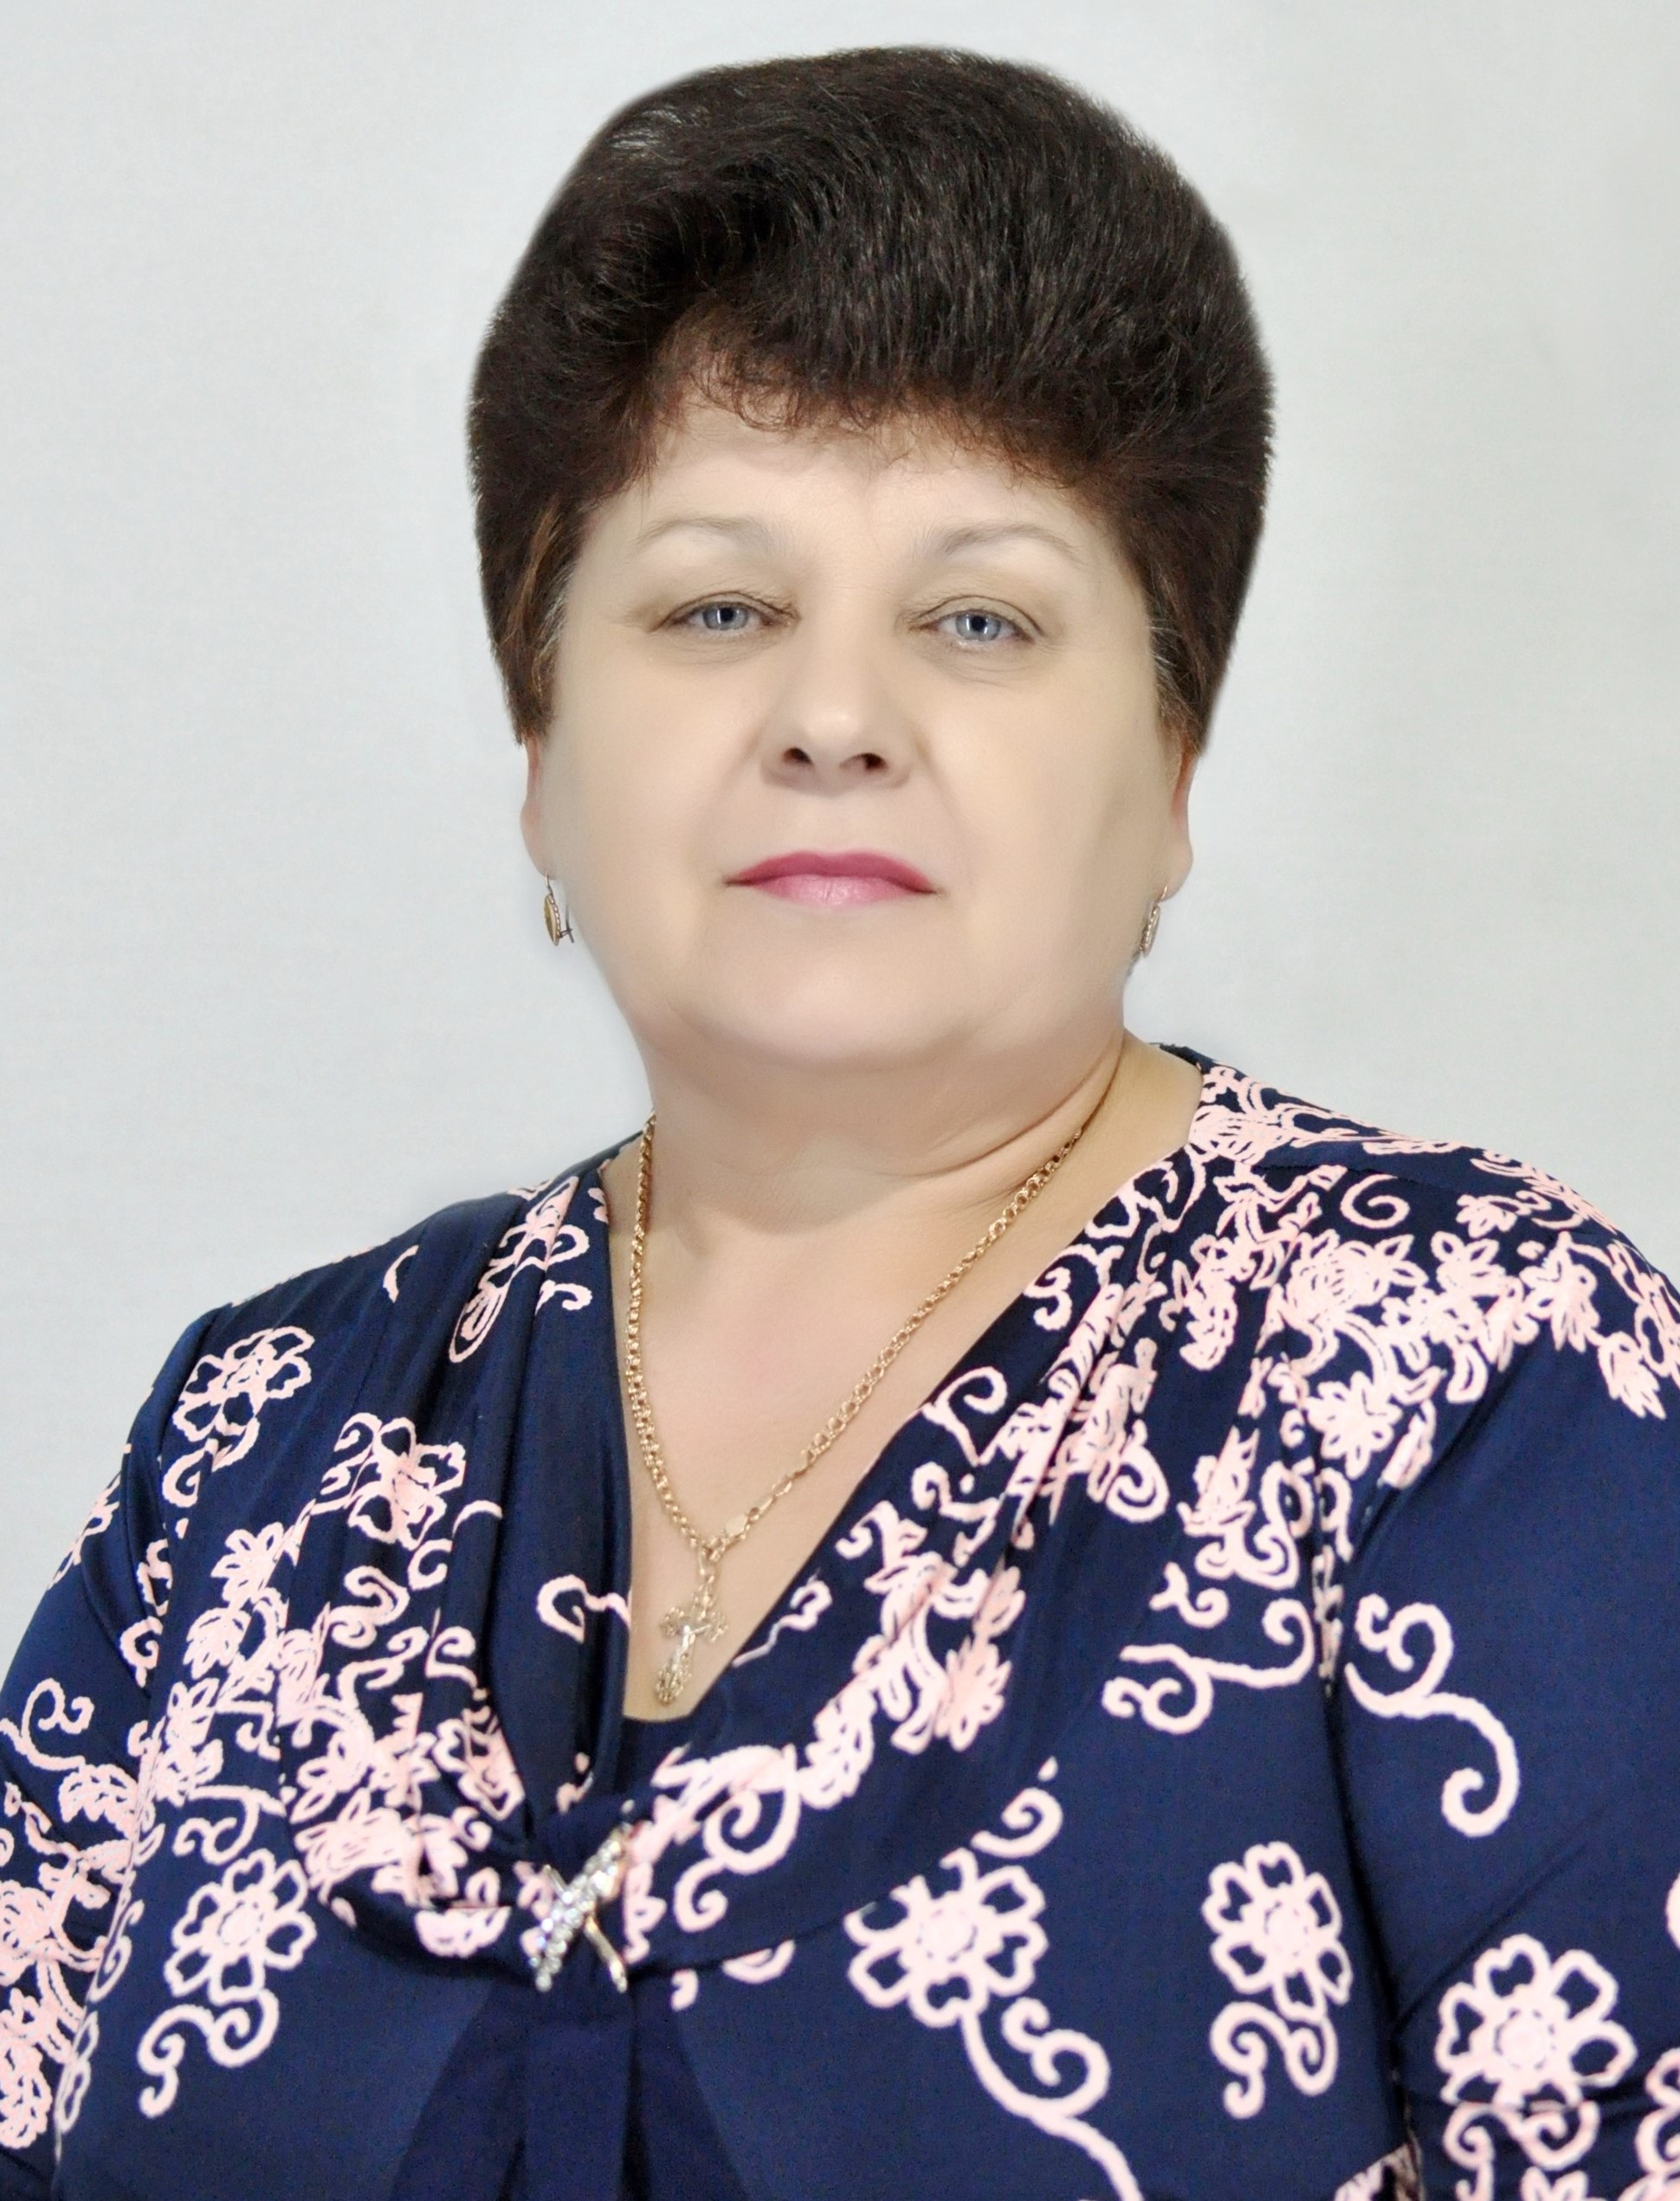 Дьяченко Наталья Викторовна. 2017 год